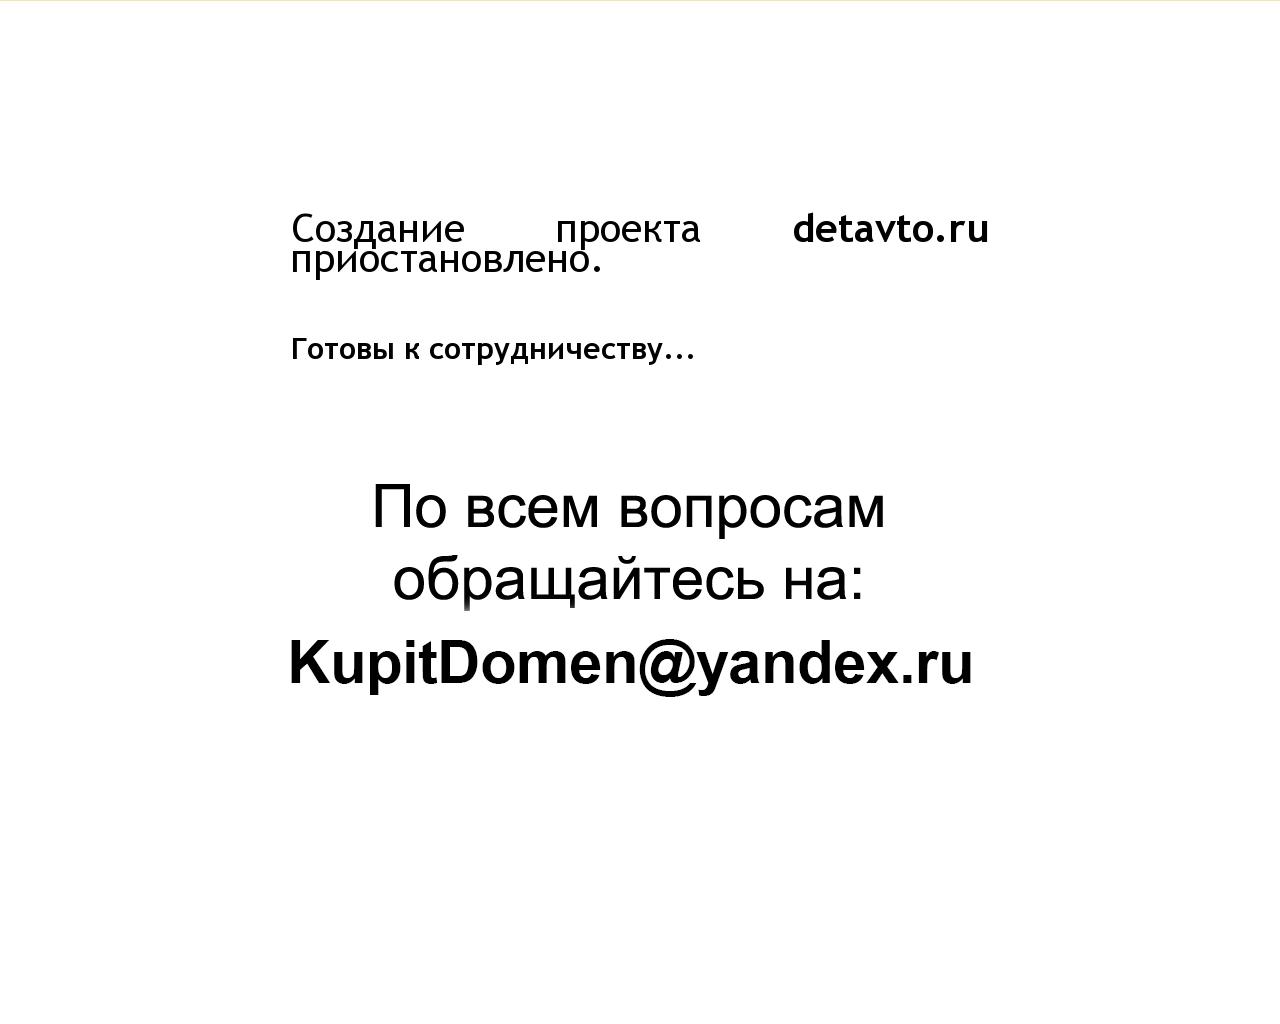 Изображение сайта detavto.ru в разрешении 1280x1024